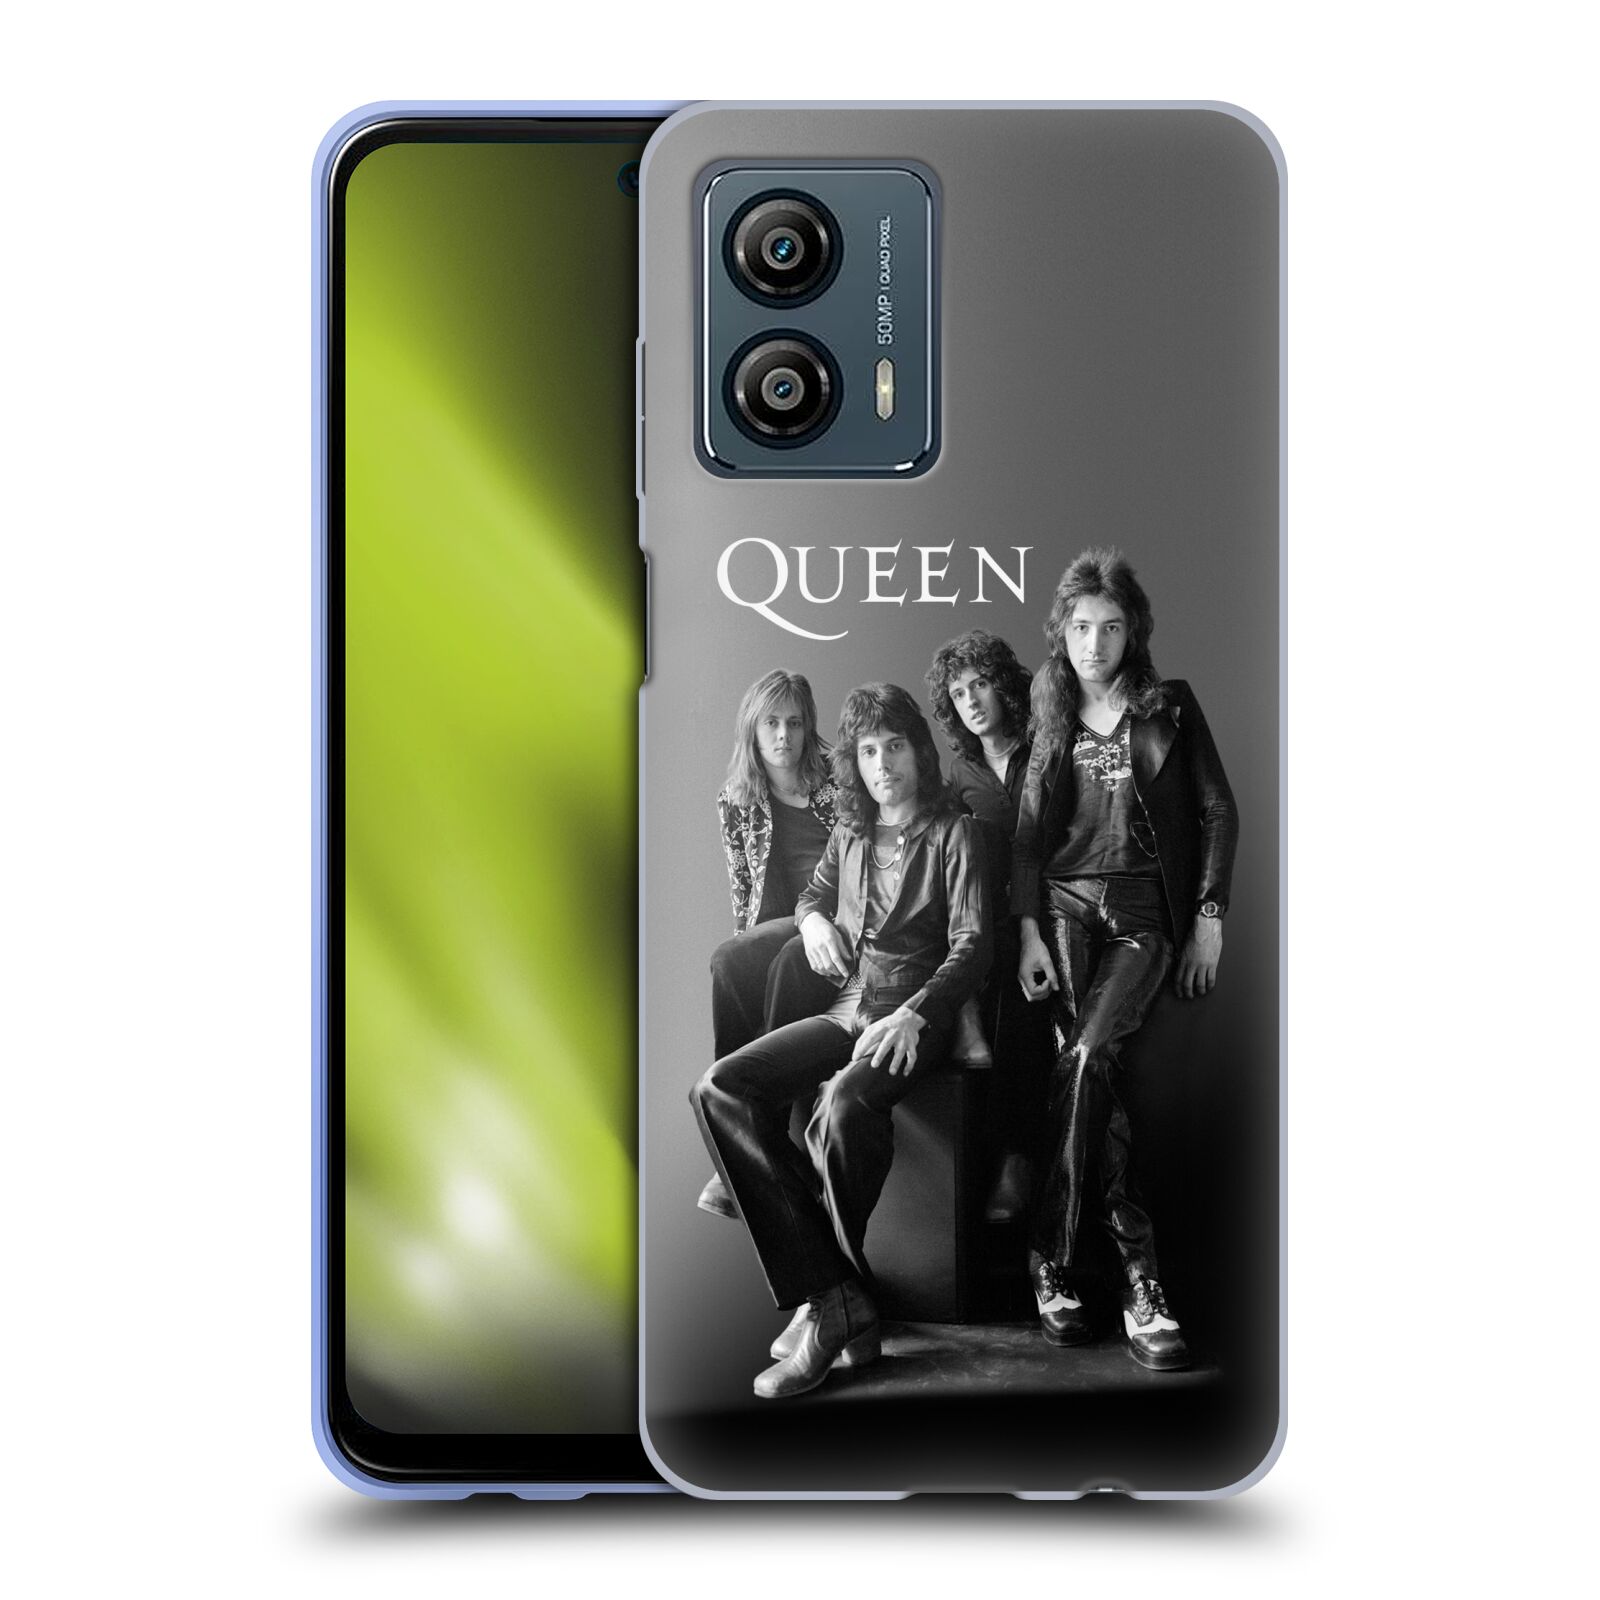 Silikonové pouzdro na mobil Motorola Moto G53 5G - Head Case - Queen - Skupina (Silikonový kryt, obal, pouzdro na mobilní telefon Motorola Moto G53 5G s motivem Queen - Skupina)